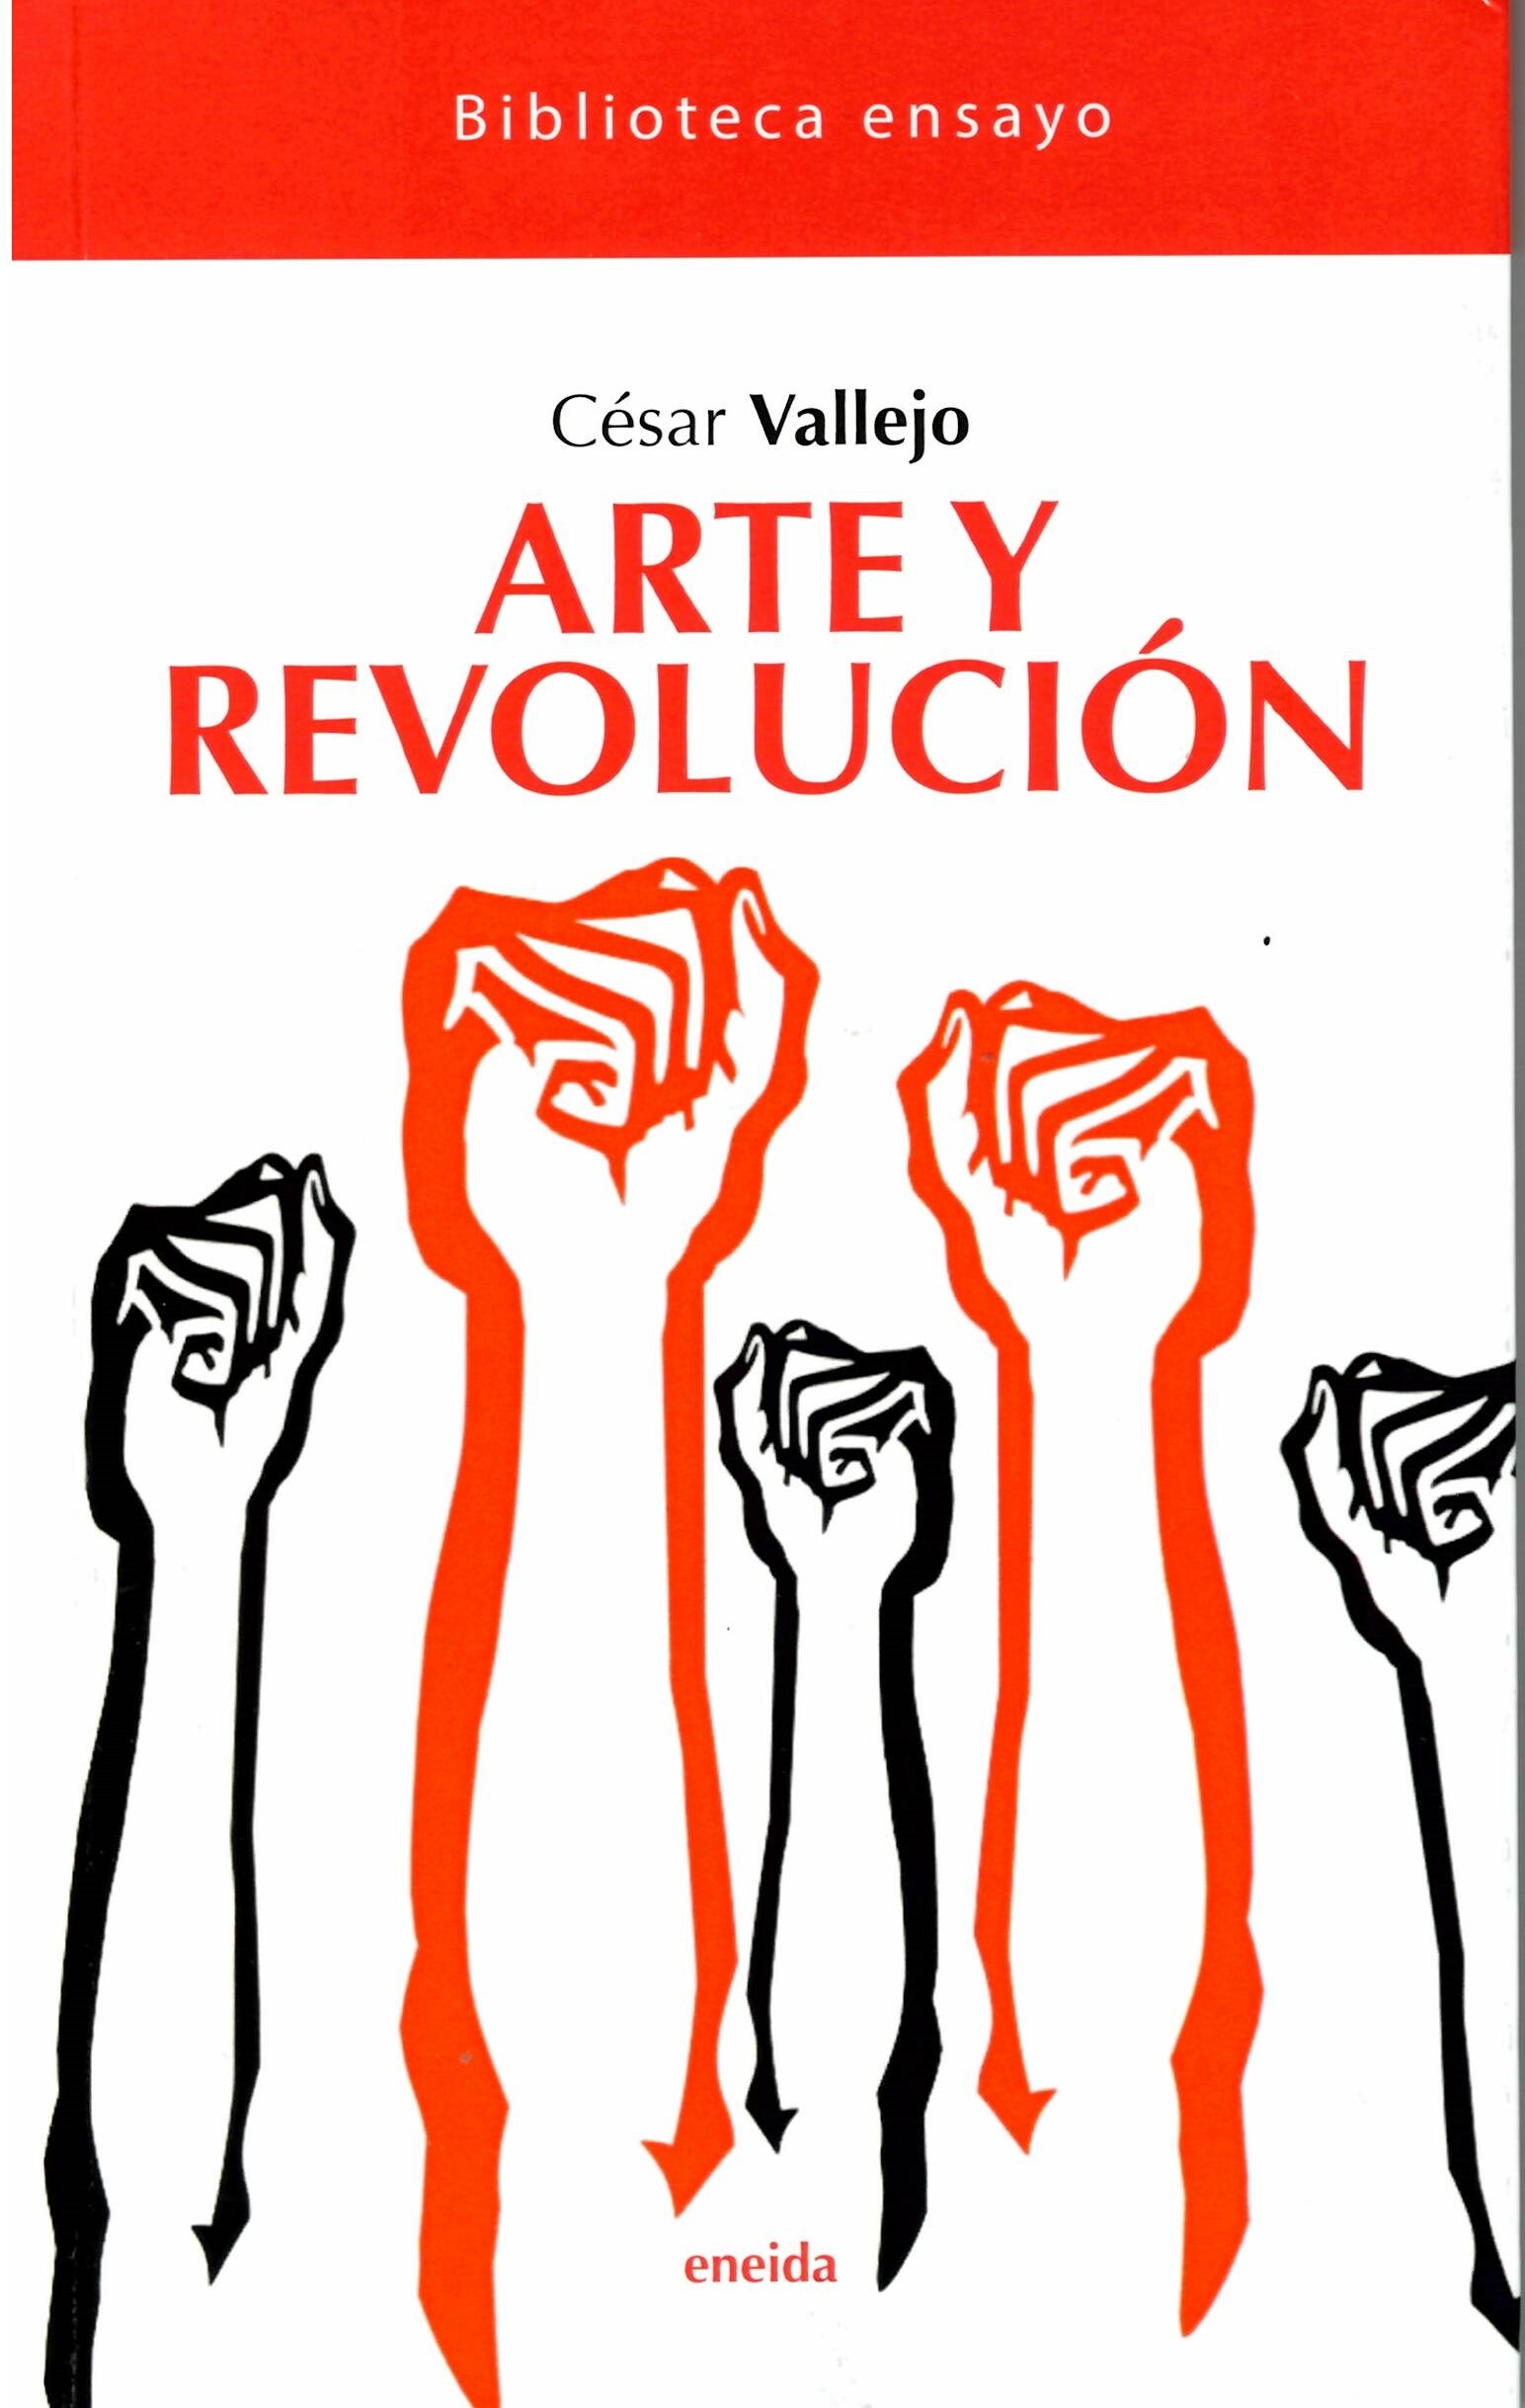 ARTE Y REVOLUCIÓN